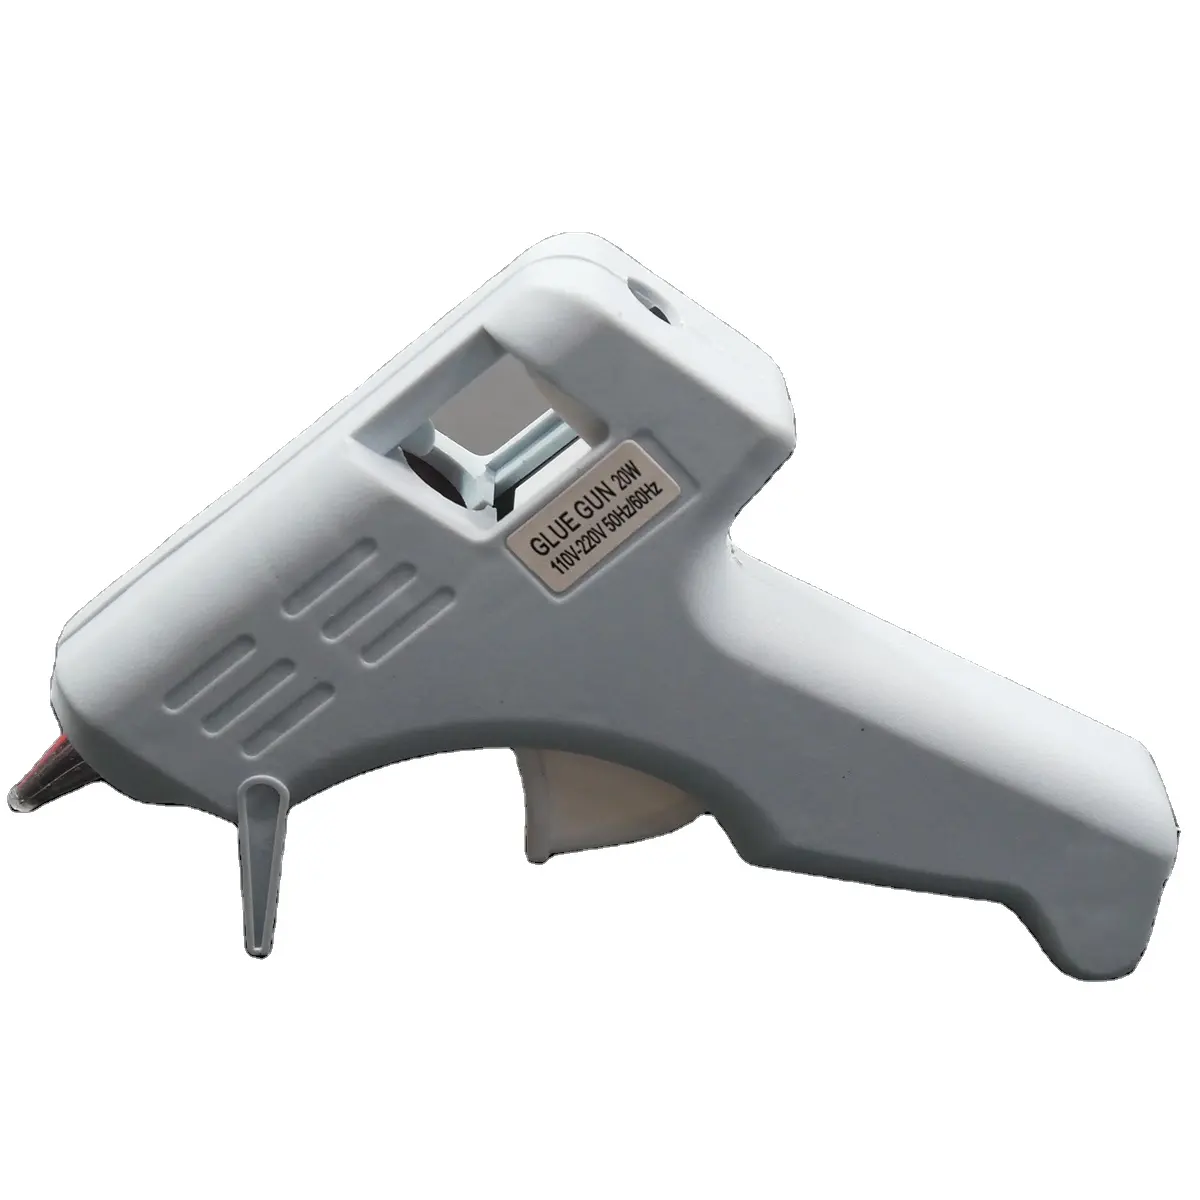 2023 Hot Macaron White Mini Glue Gun 10W-40W Suitable for DIY School, Handmade Glue Gun for Kids, DIY Craft Home Repair Projects